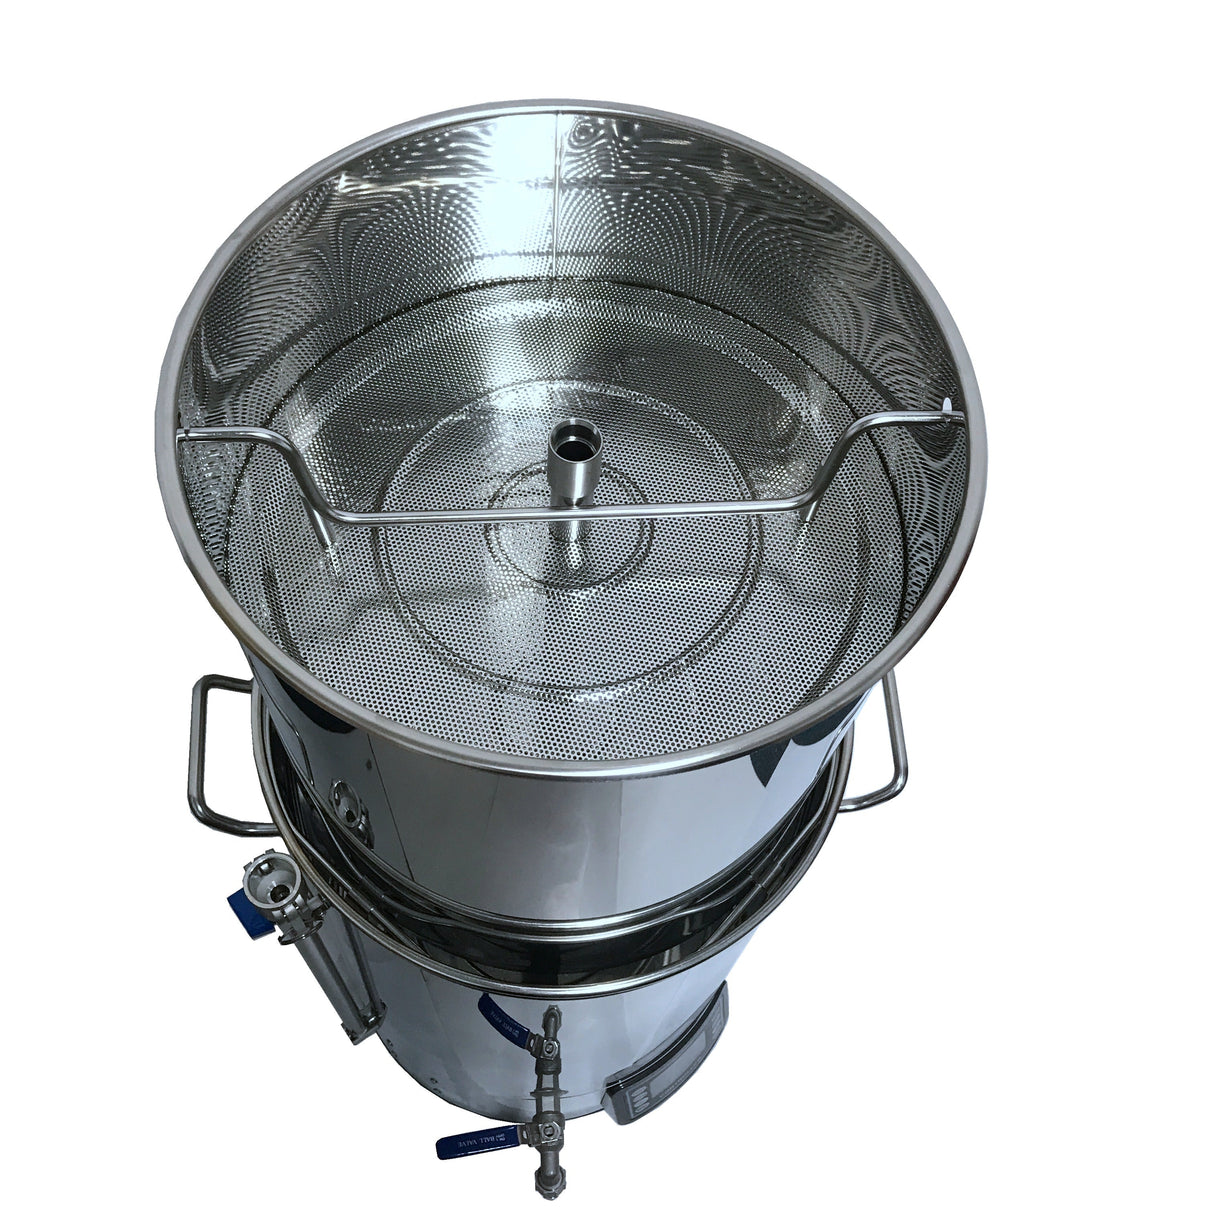 Güten Brew | Máquina WIFI para elaborar cerveza Todo en uno | 52L totales | 45L efectivos